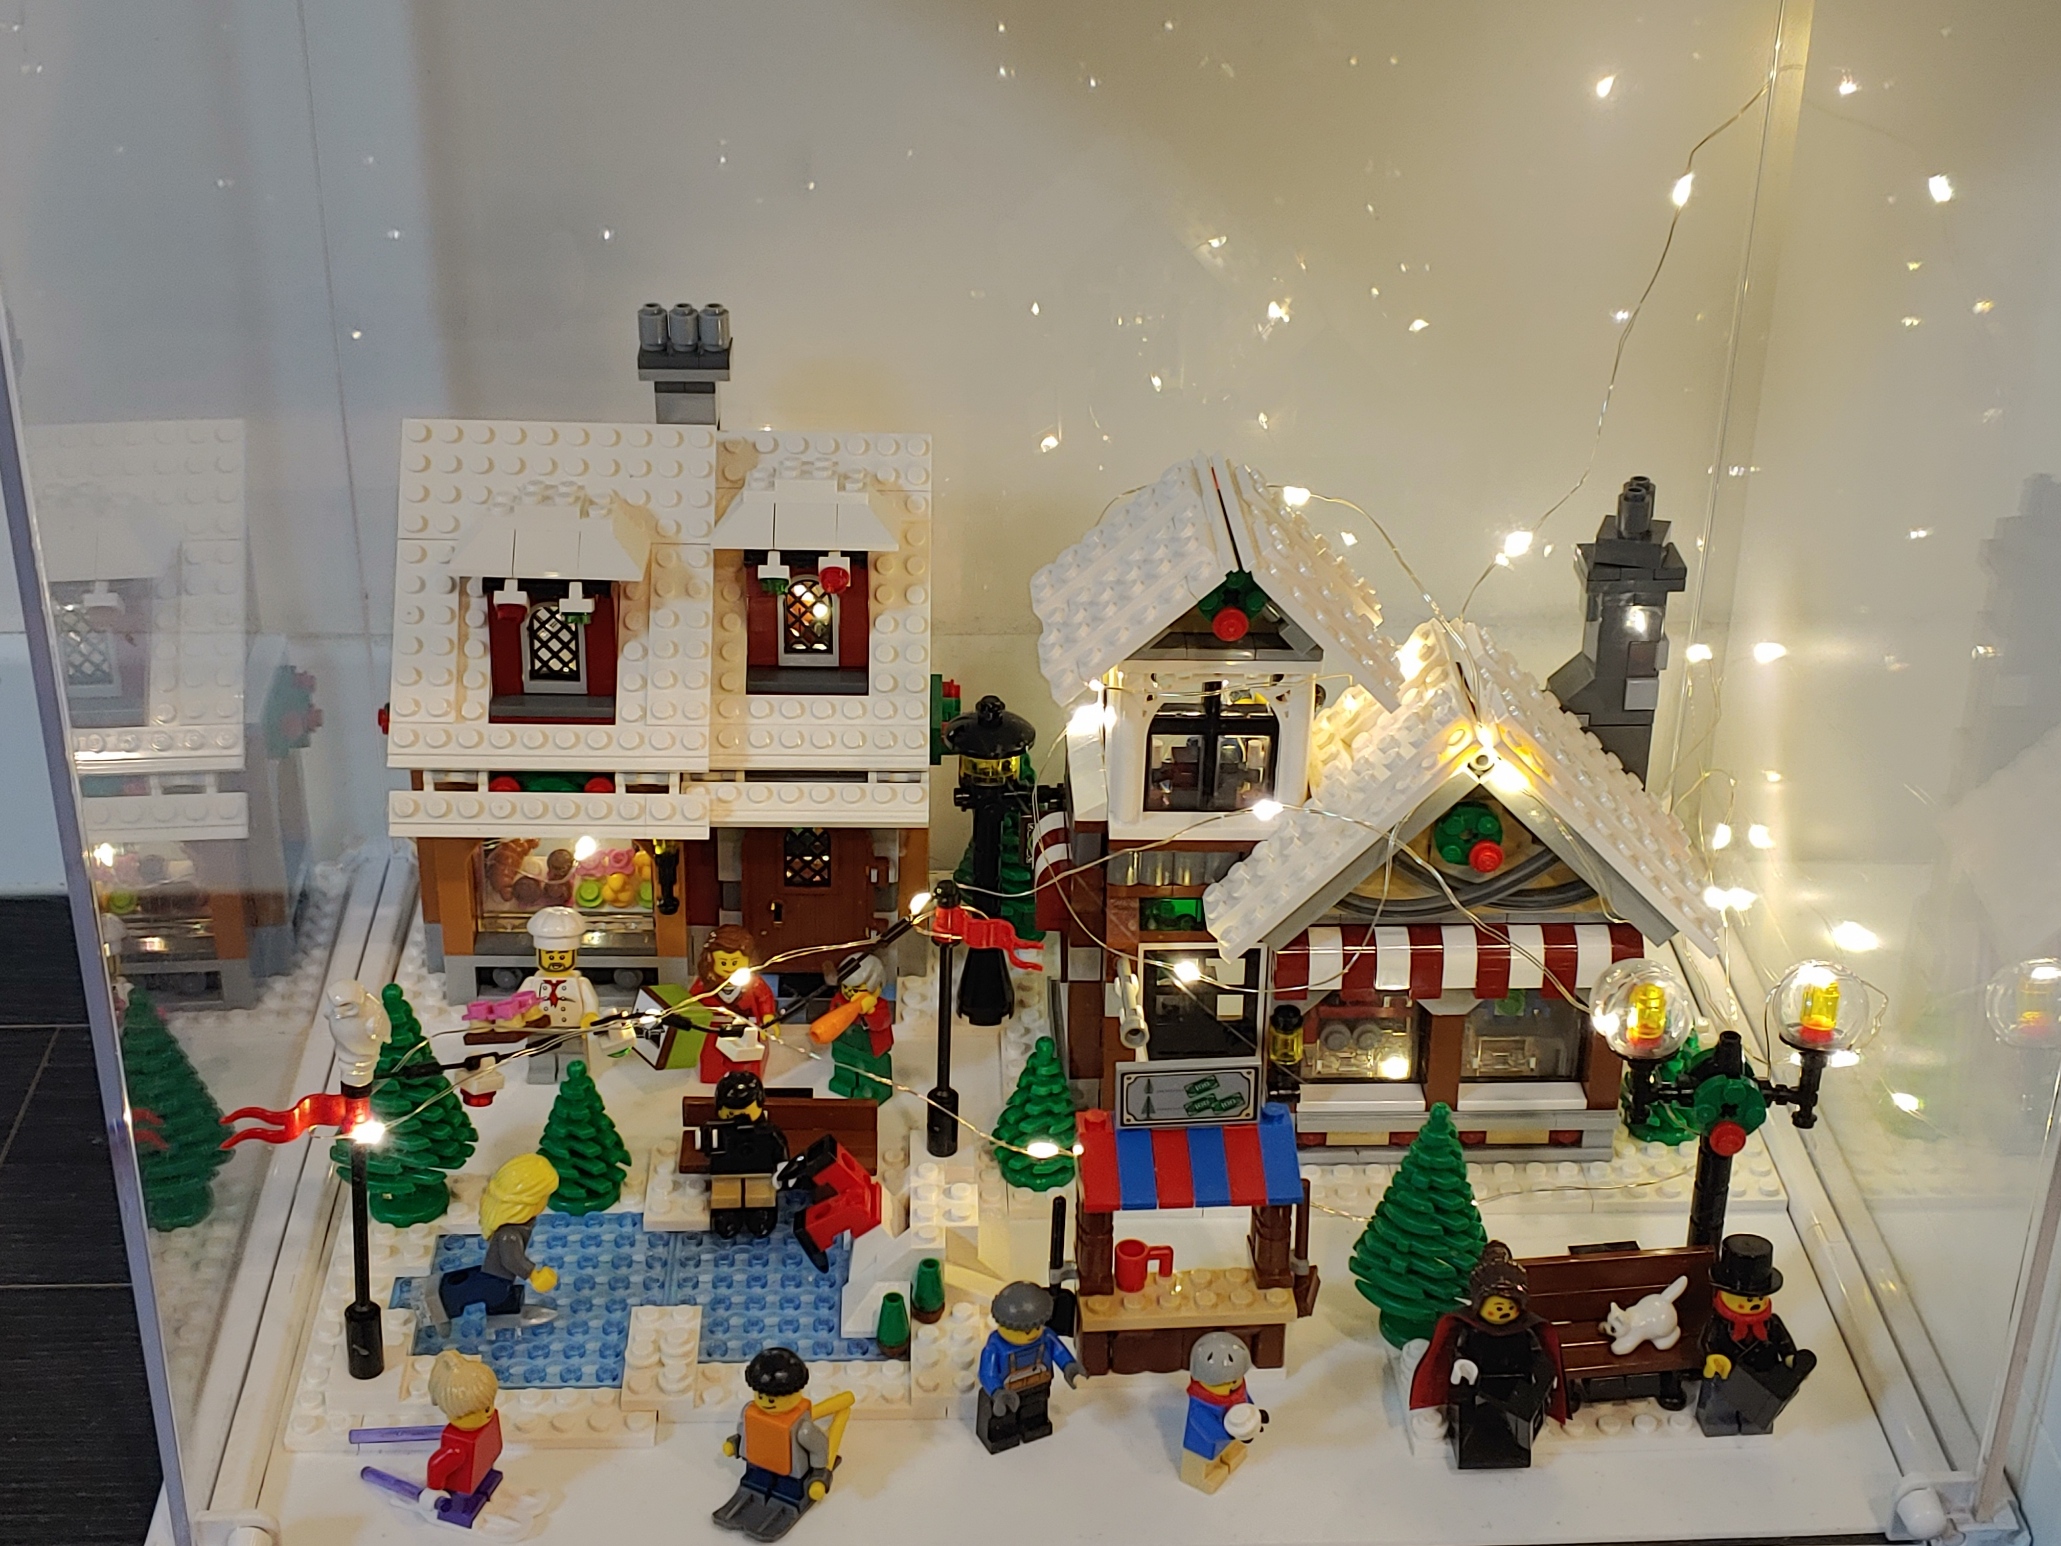 크리스마스 윈터 제품 전시 - 빵집과 장난감 가게